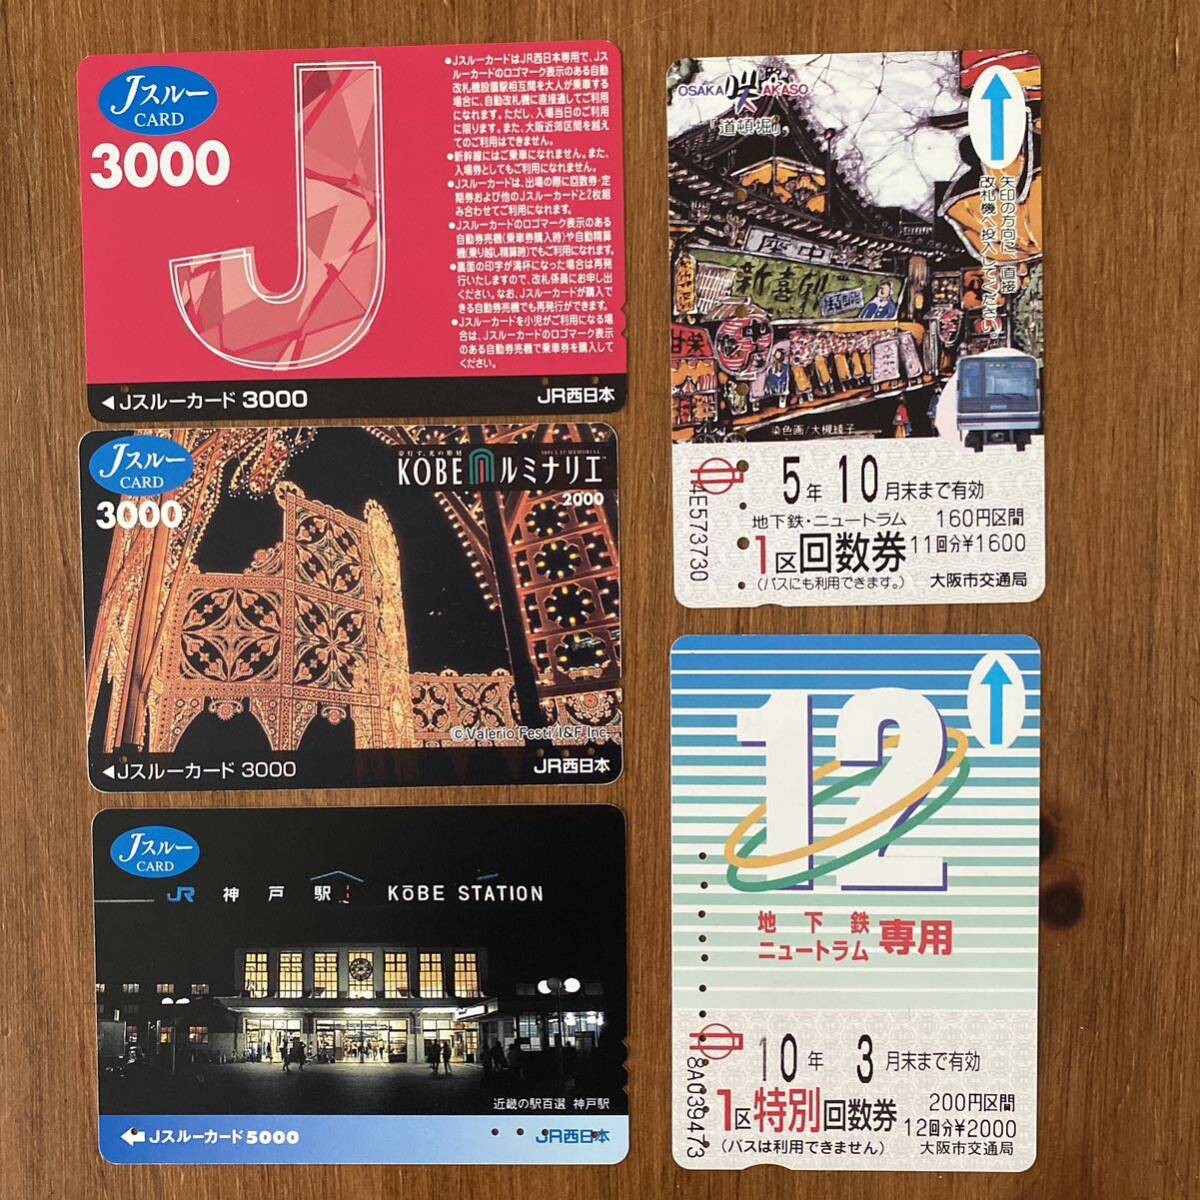 Ｊスルーカード JR西日本 神戸 ルミナリエ 使用済み 鉄道カード_画像1